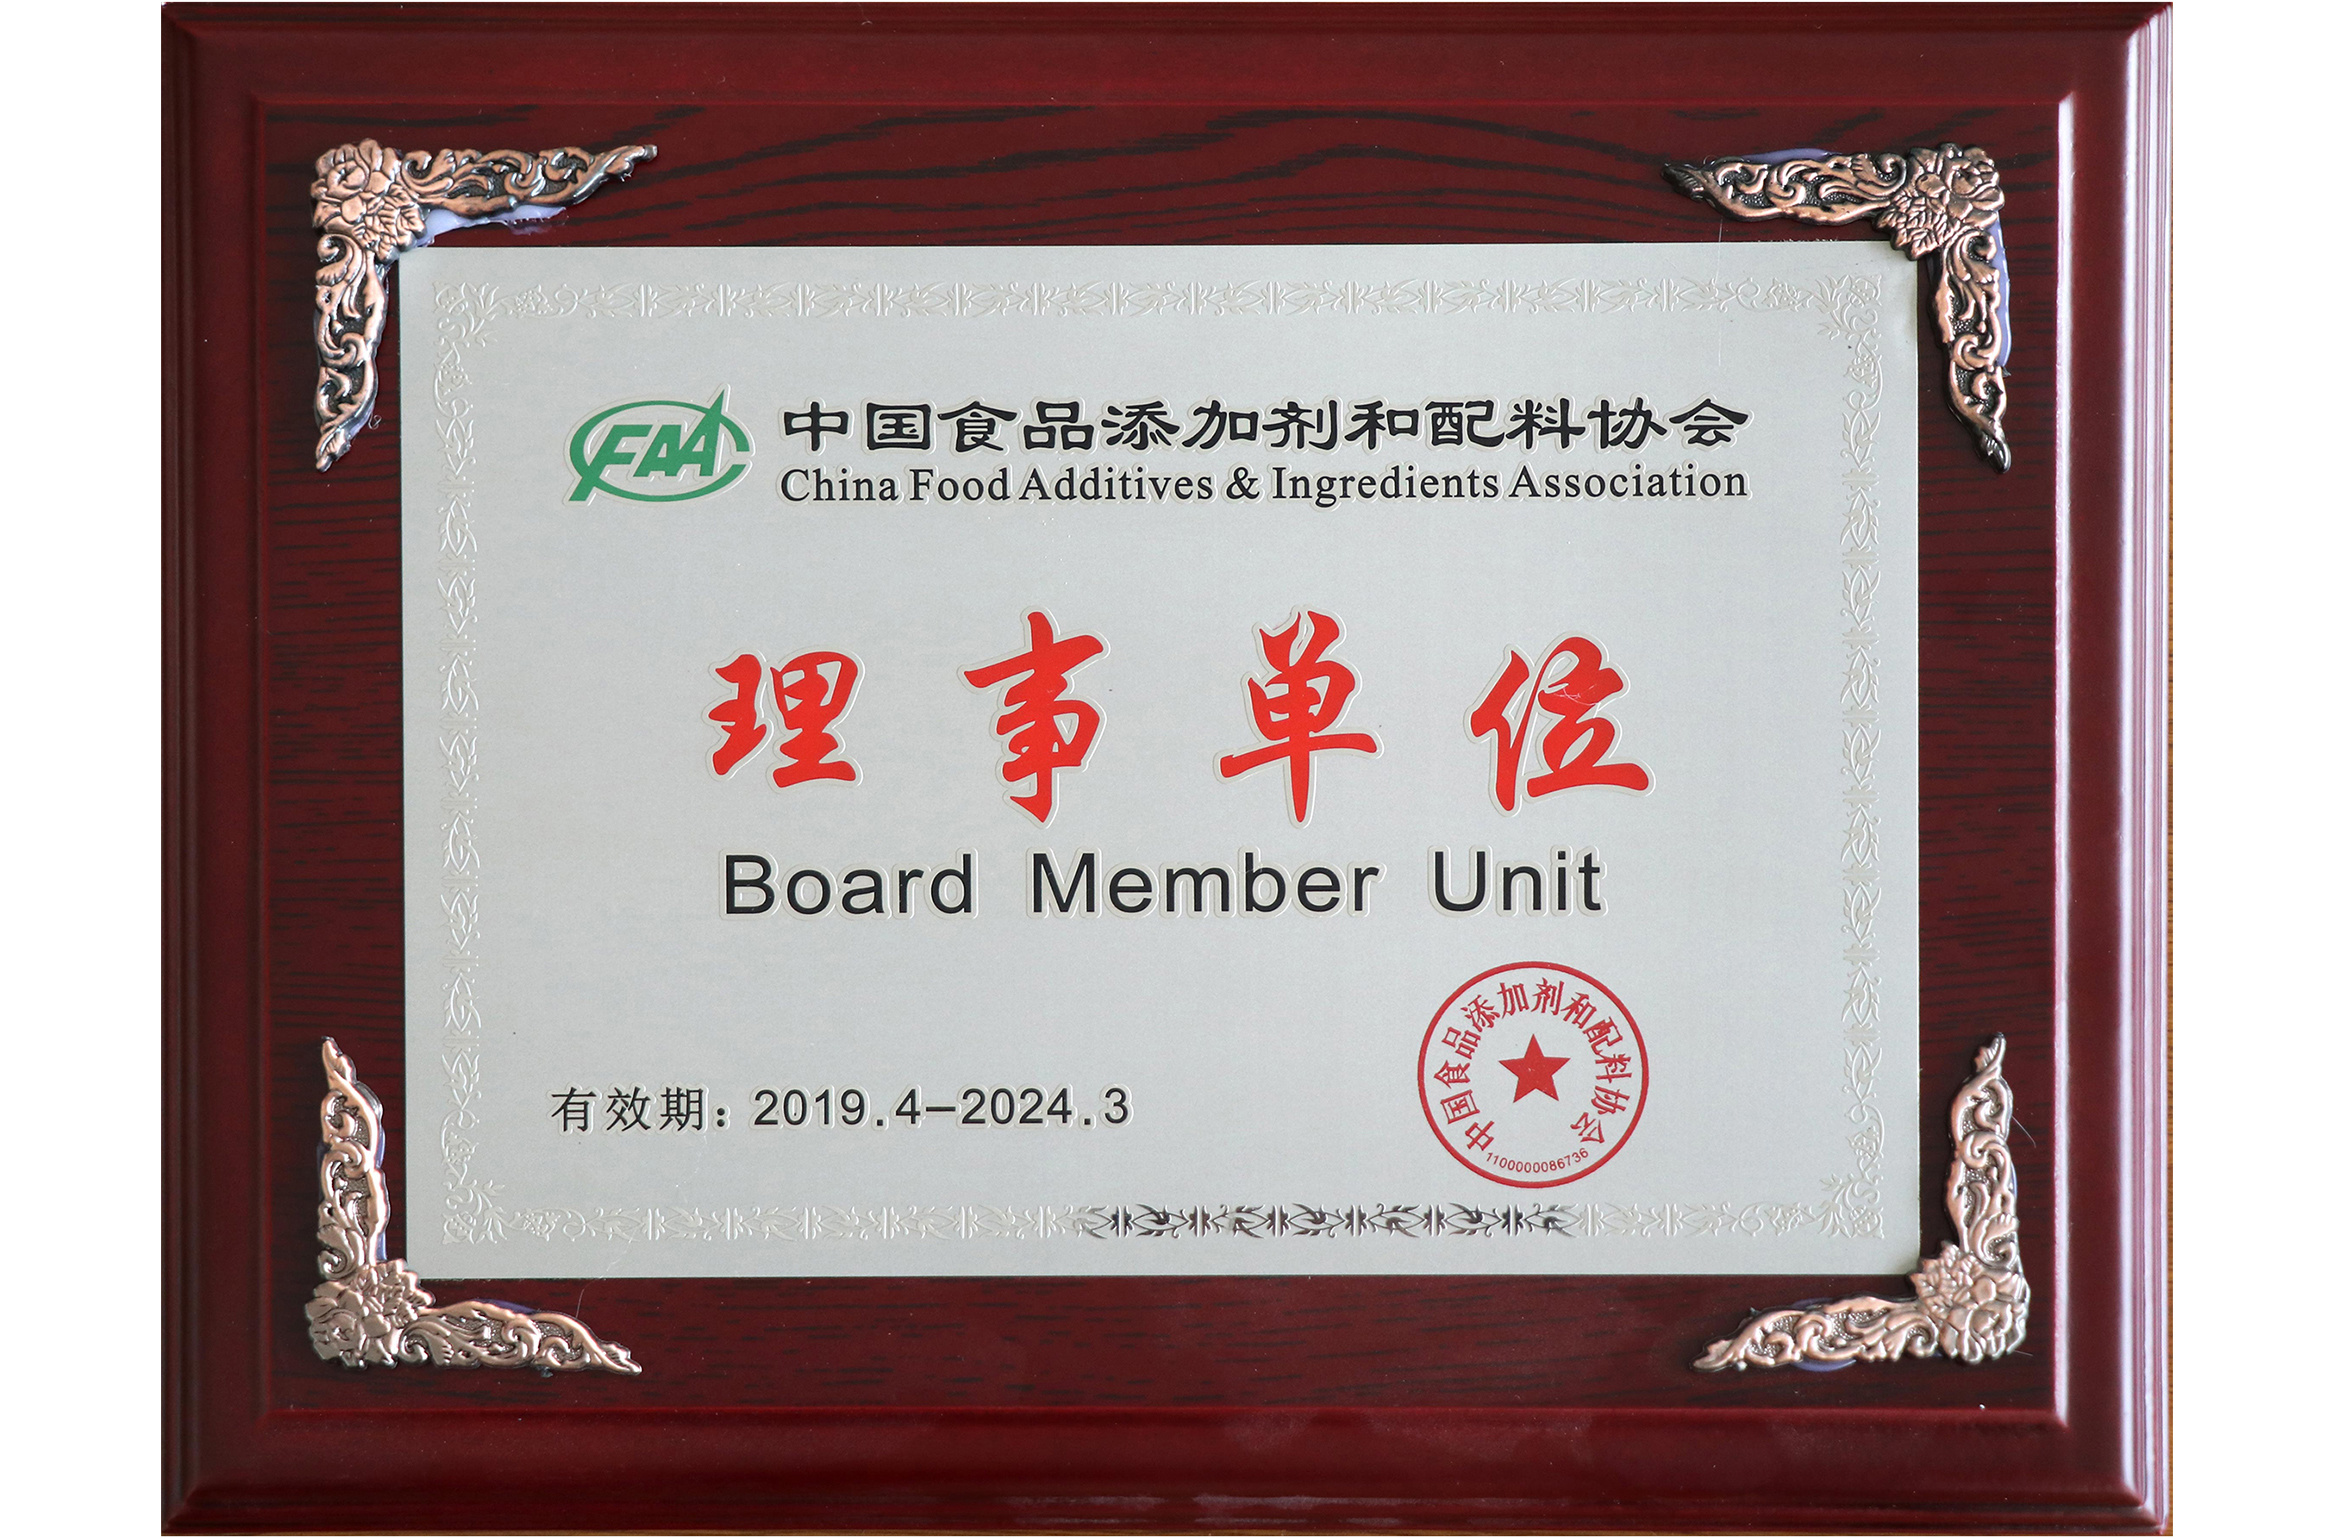 中國食品添加劑和配料協會理事單位